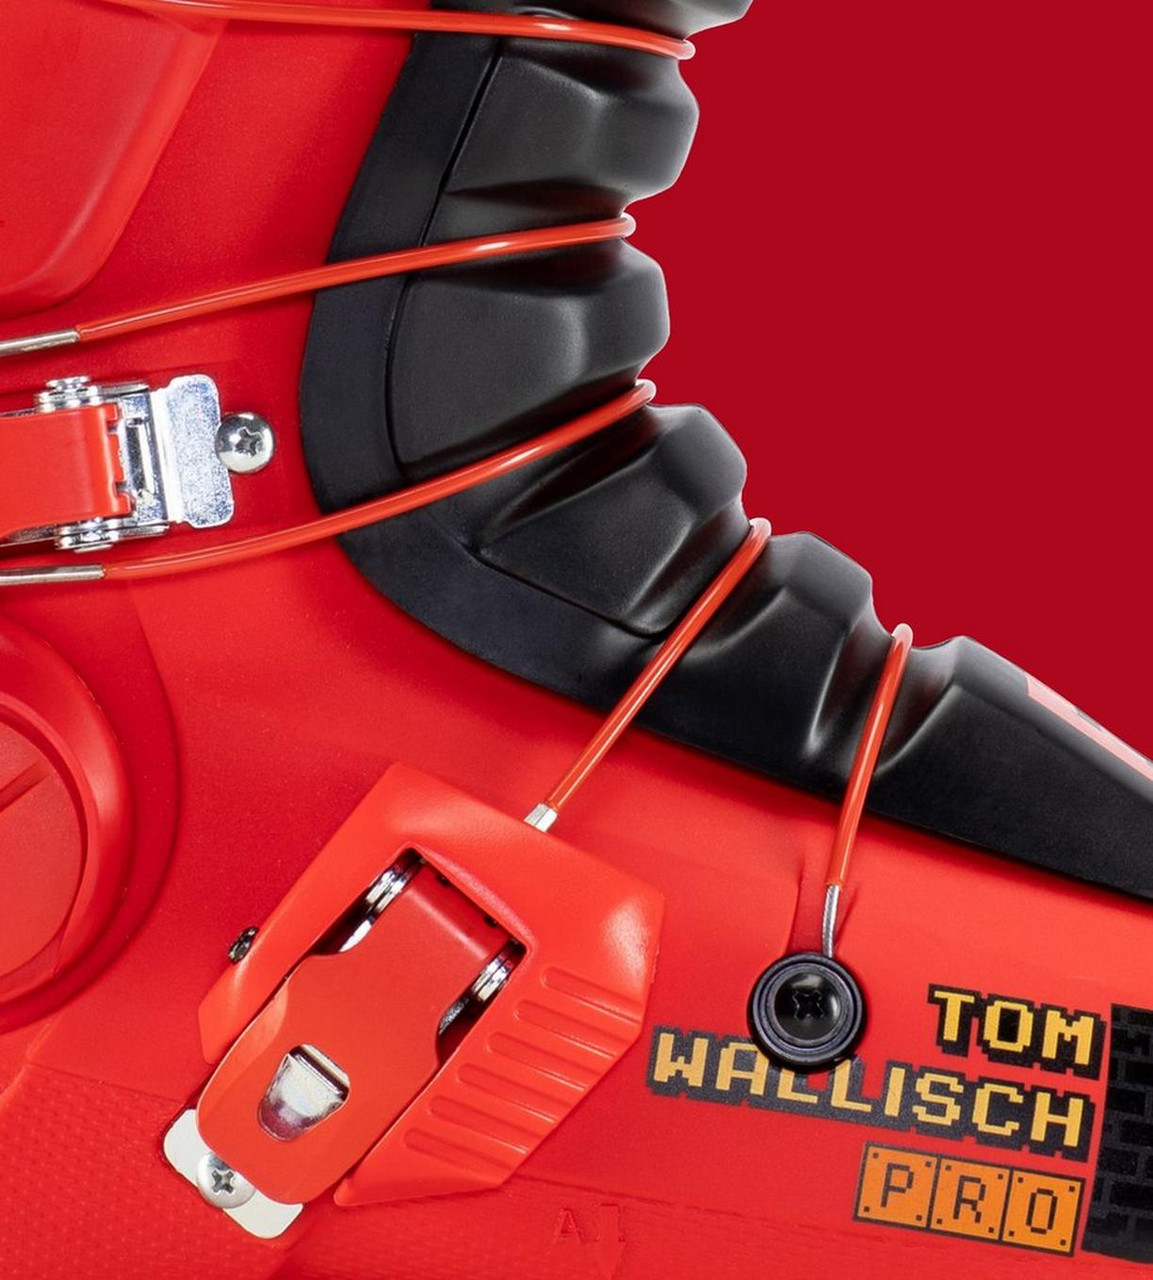 Full Tilt Tom Wallisch Pro Boot Review - Freeskier Magazine